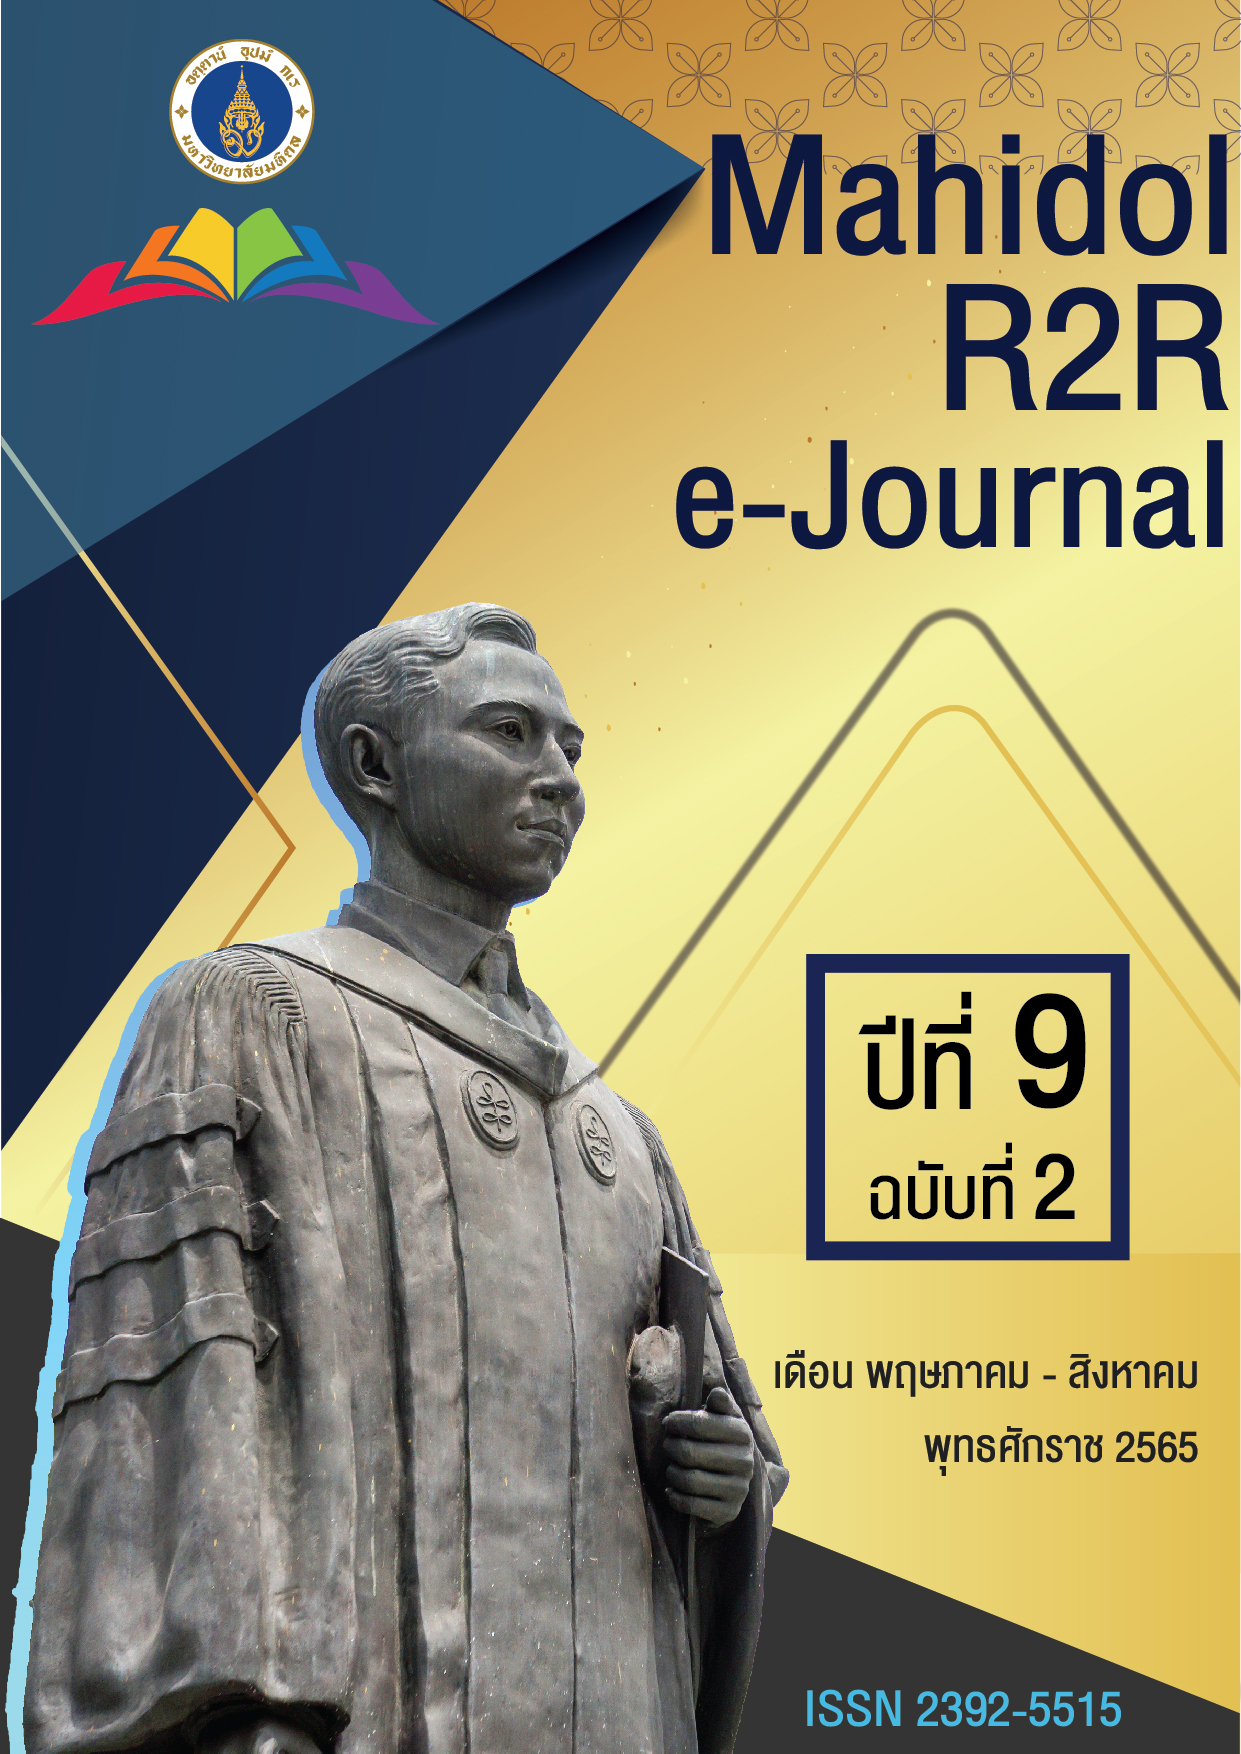 					ดู ปีที่ 9 ฉบับที่ 2 (2565): Mahidol R2R e-Journal
				